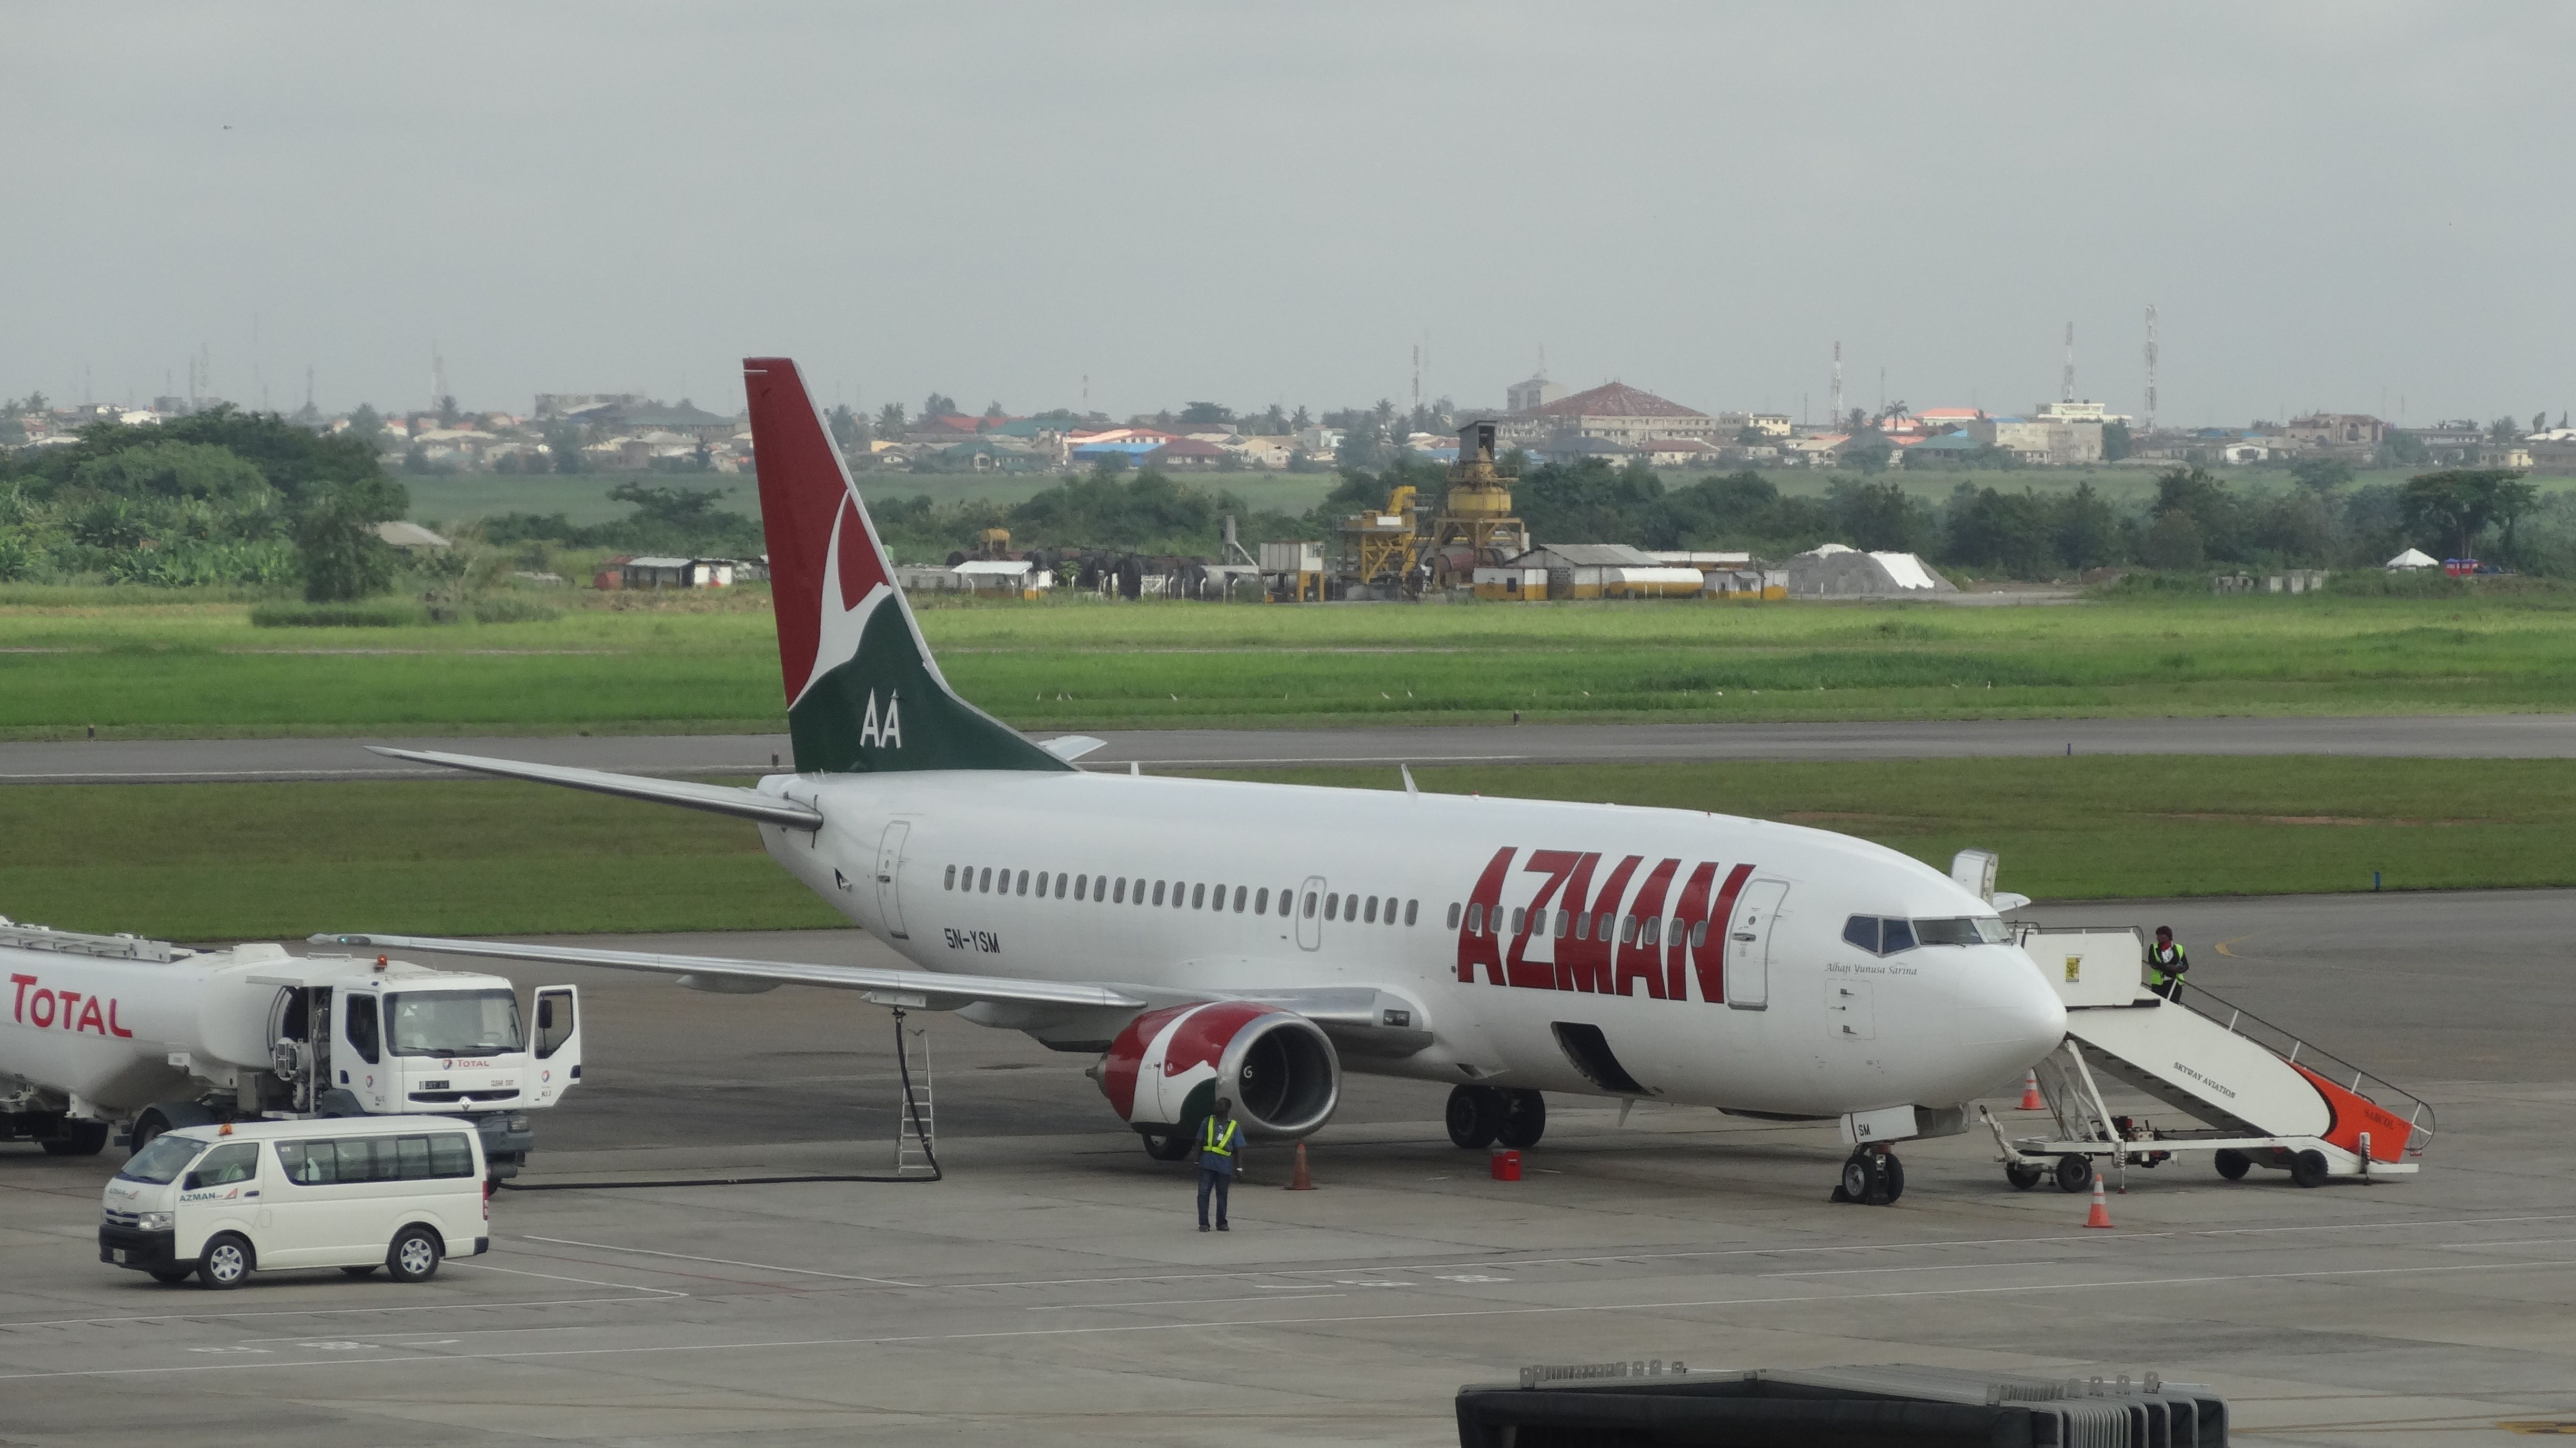 Azman Air Lagos Airport